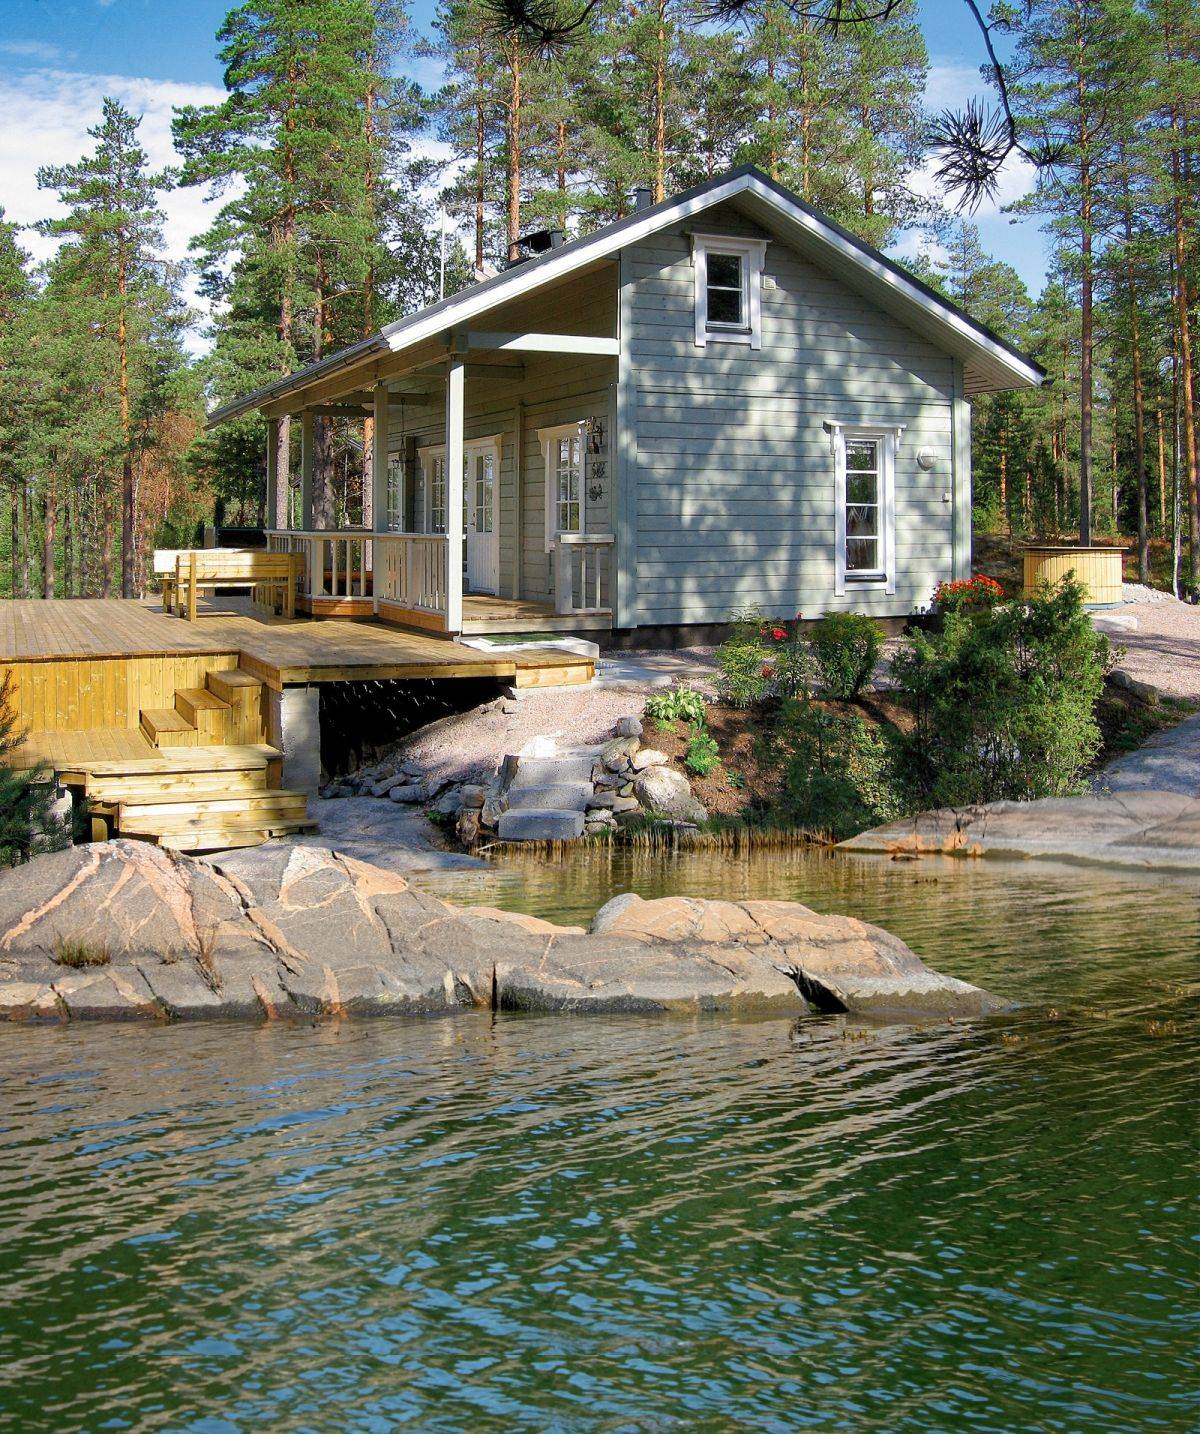 Каркасный дом по финской технологии